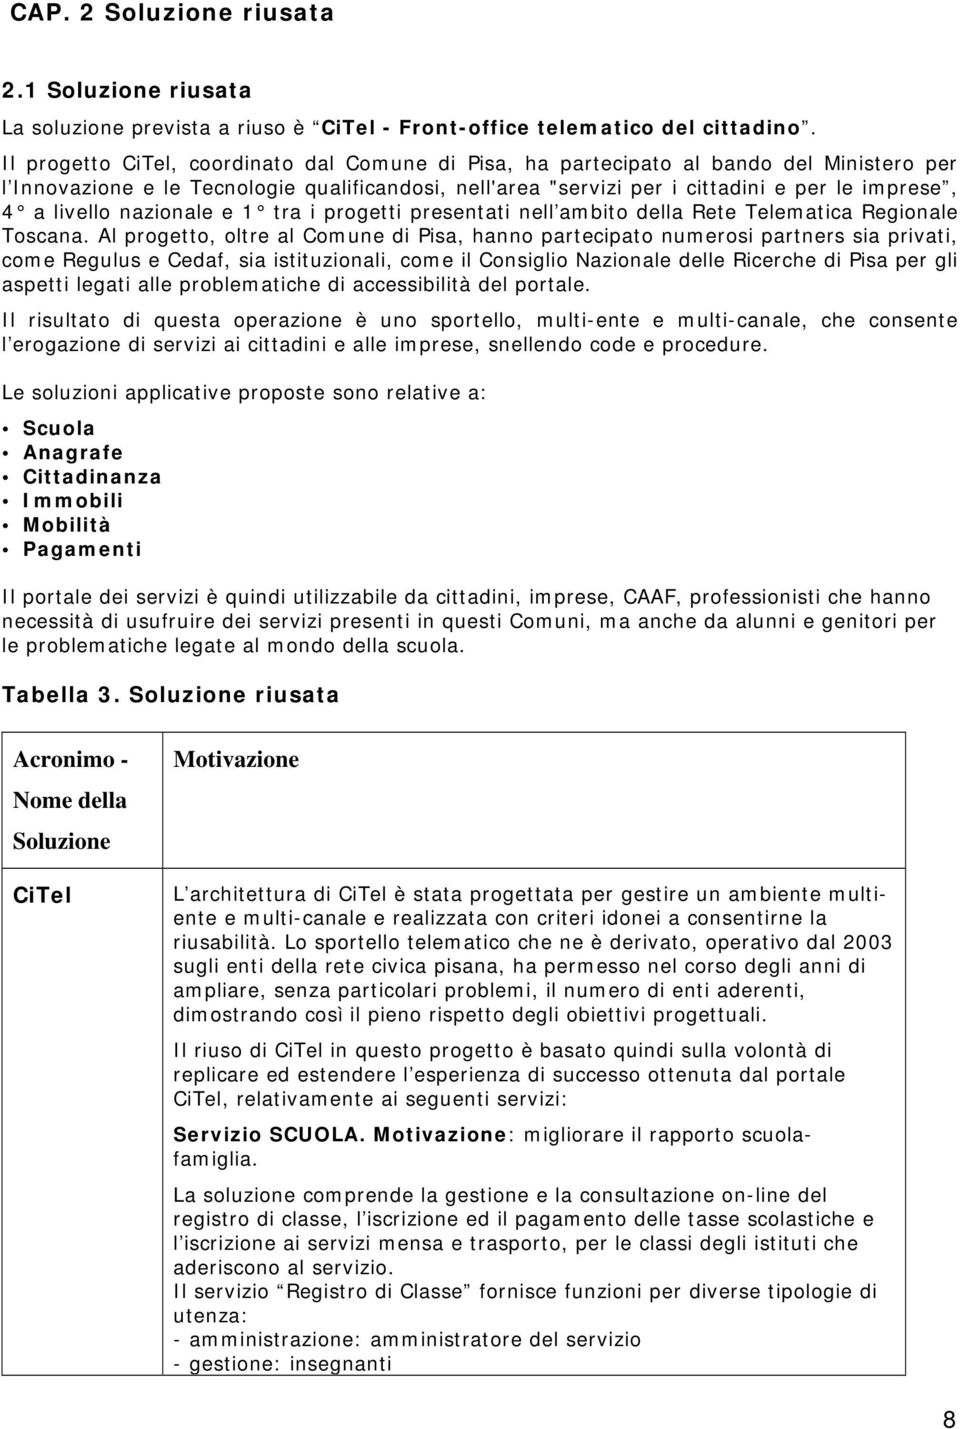 livello nazionale e 1 tra i progetti presentati nell ambito della Rete Telematica Regionale Toscana.